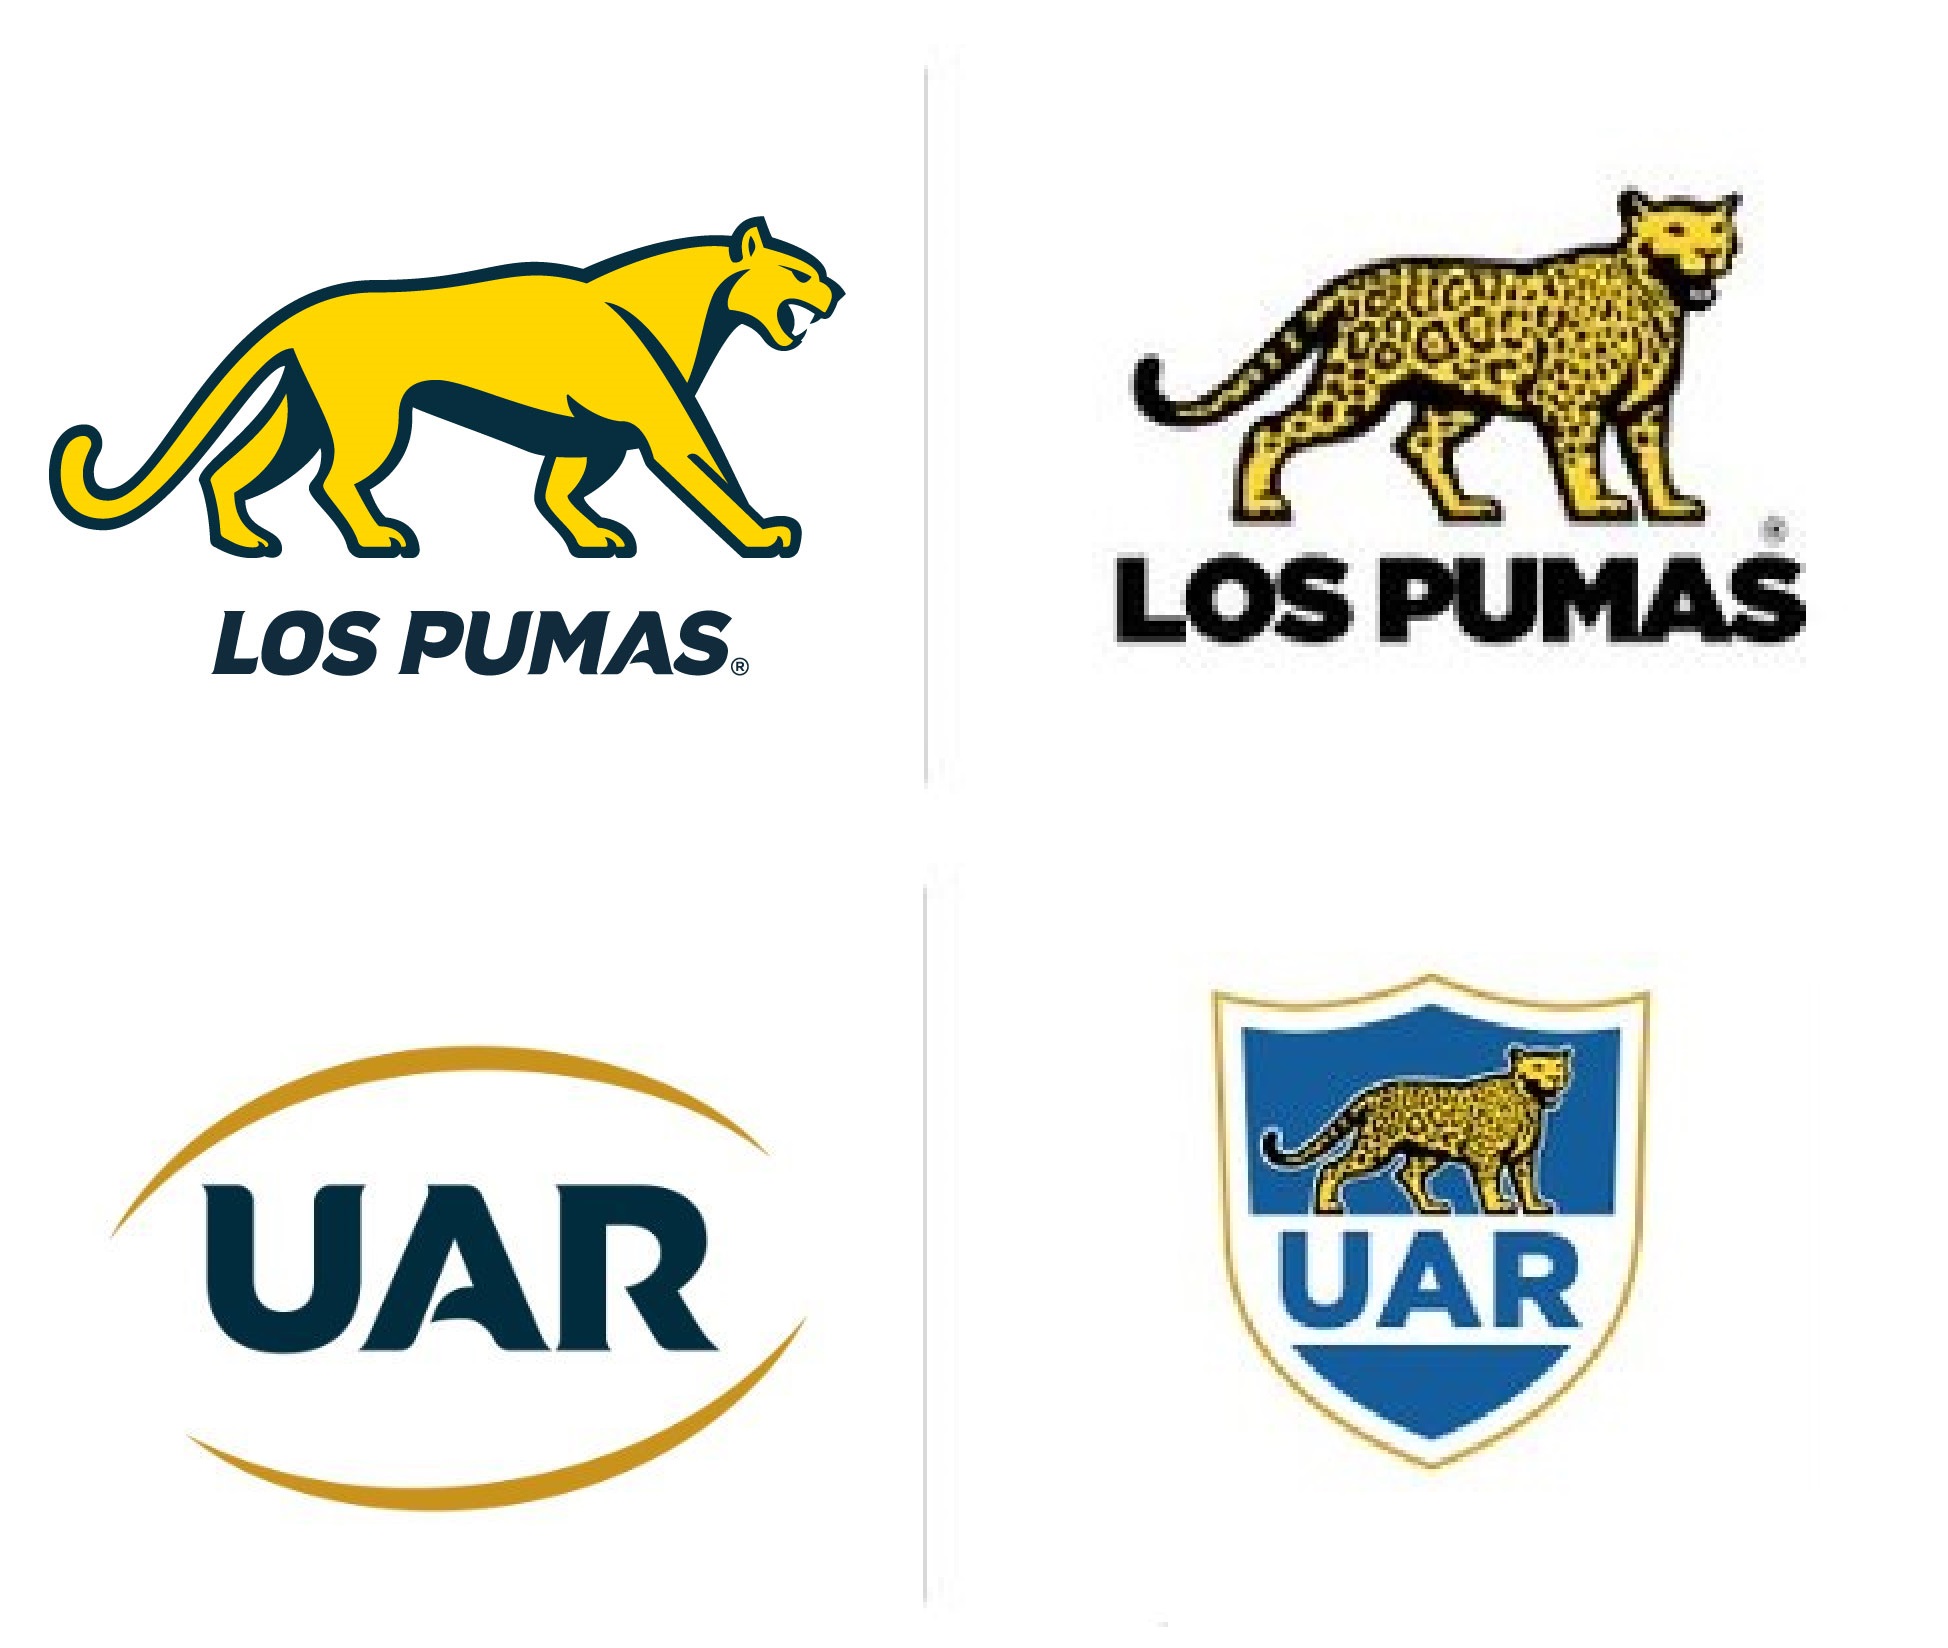 Debate y polémica en puerta: la UAR anunció nueva identidad y el Puma ...